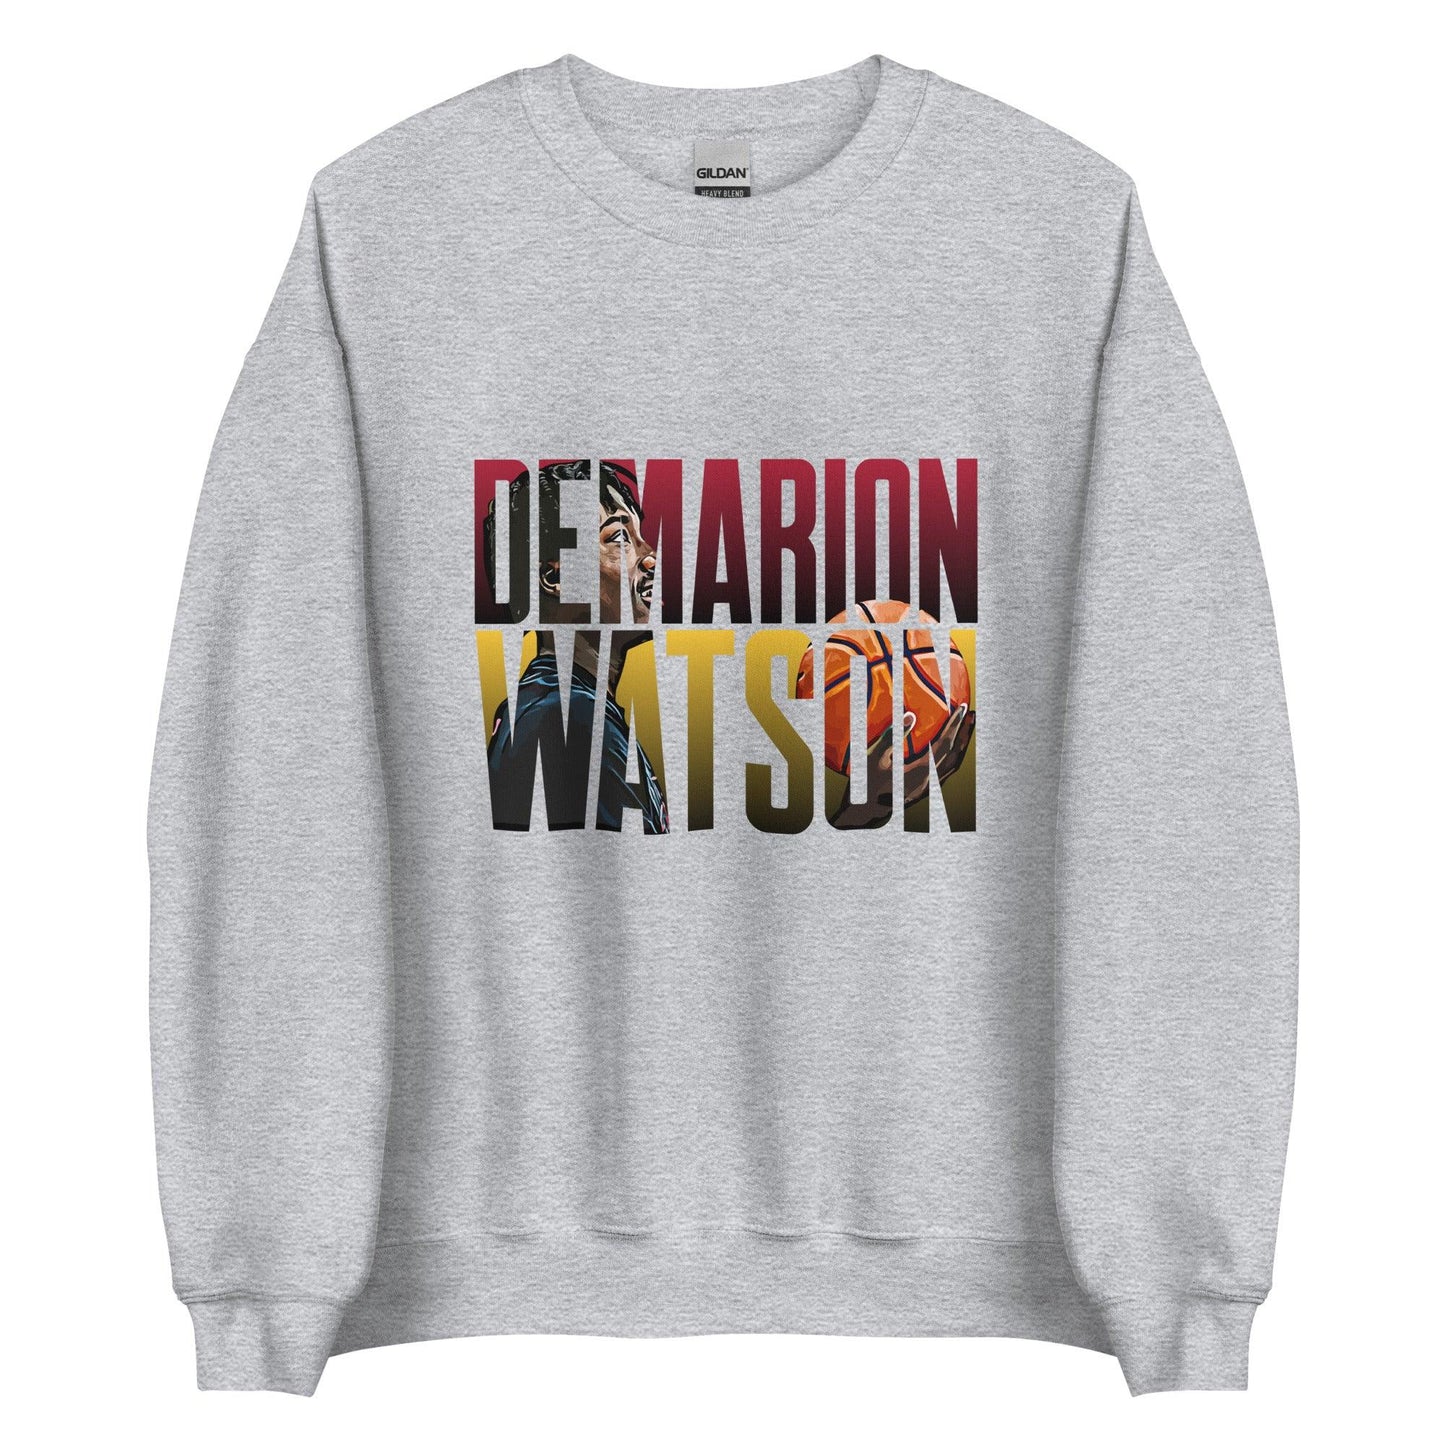 Demarion Watson "Future Star" Sweatshirt - Fan Arch